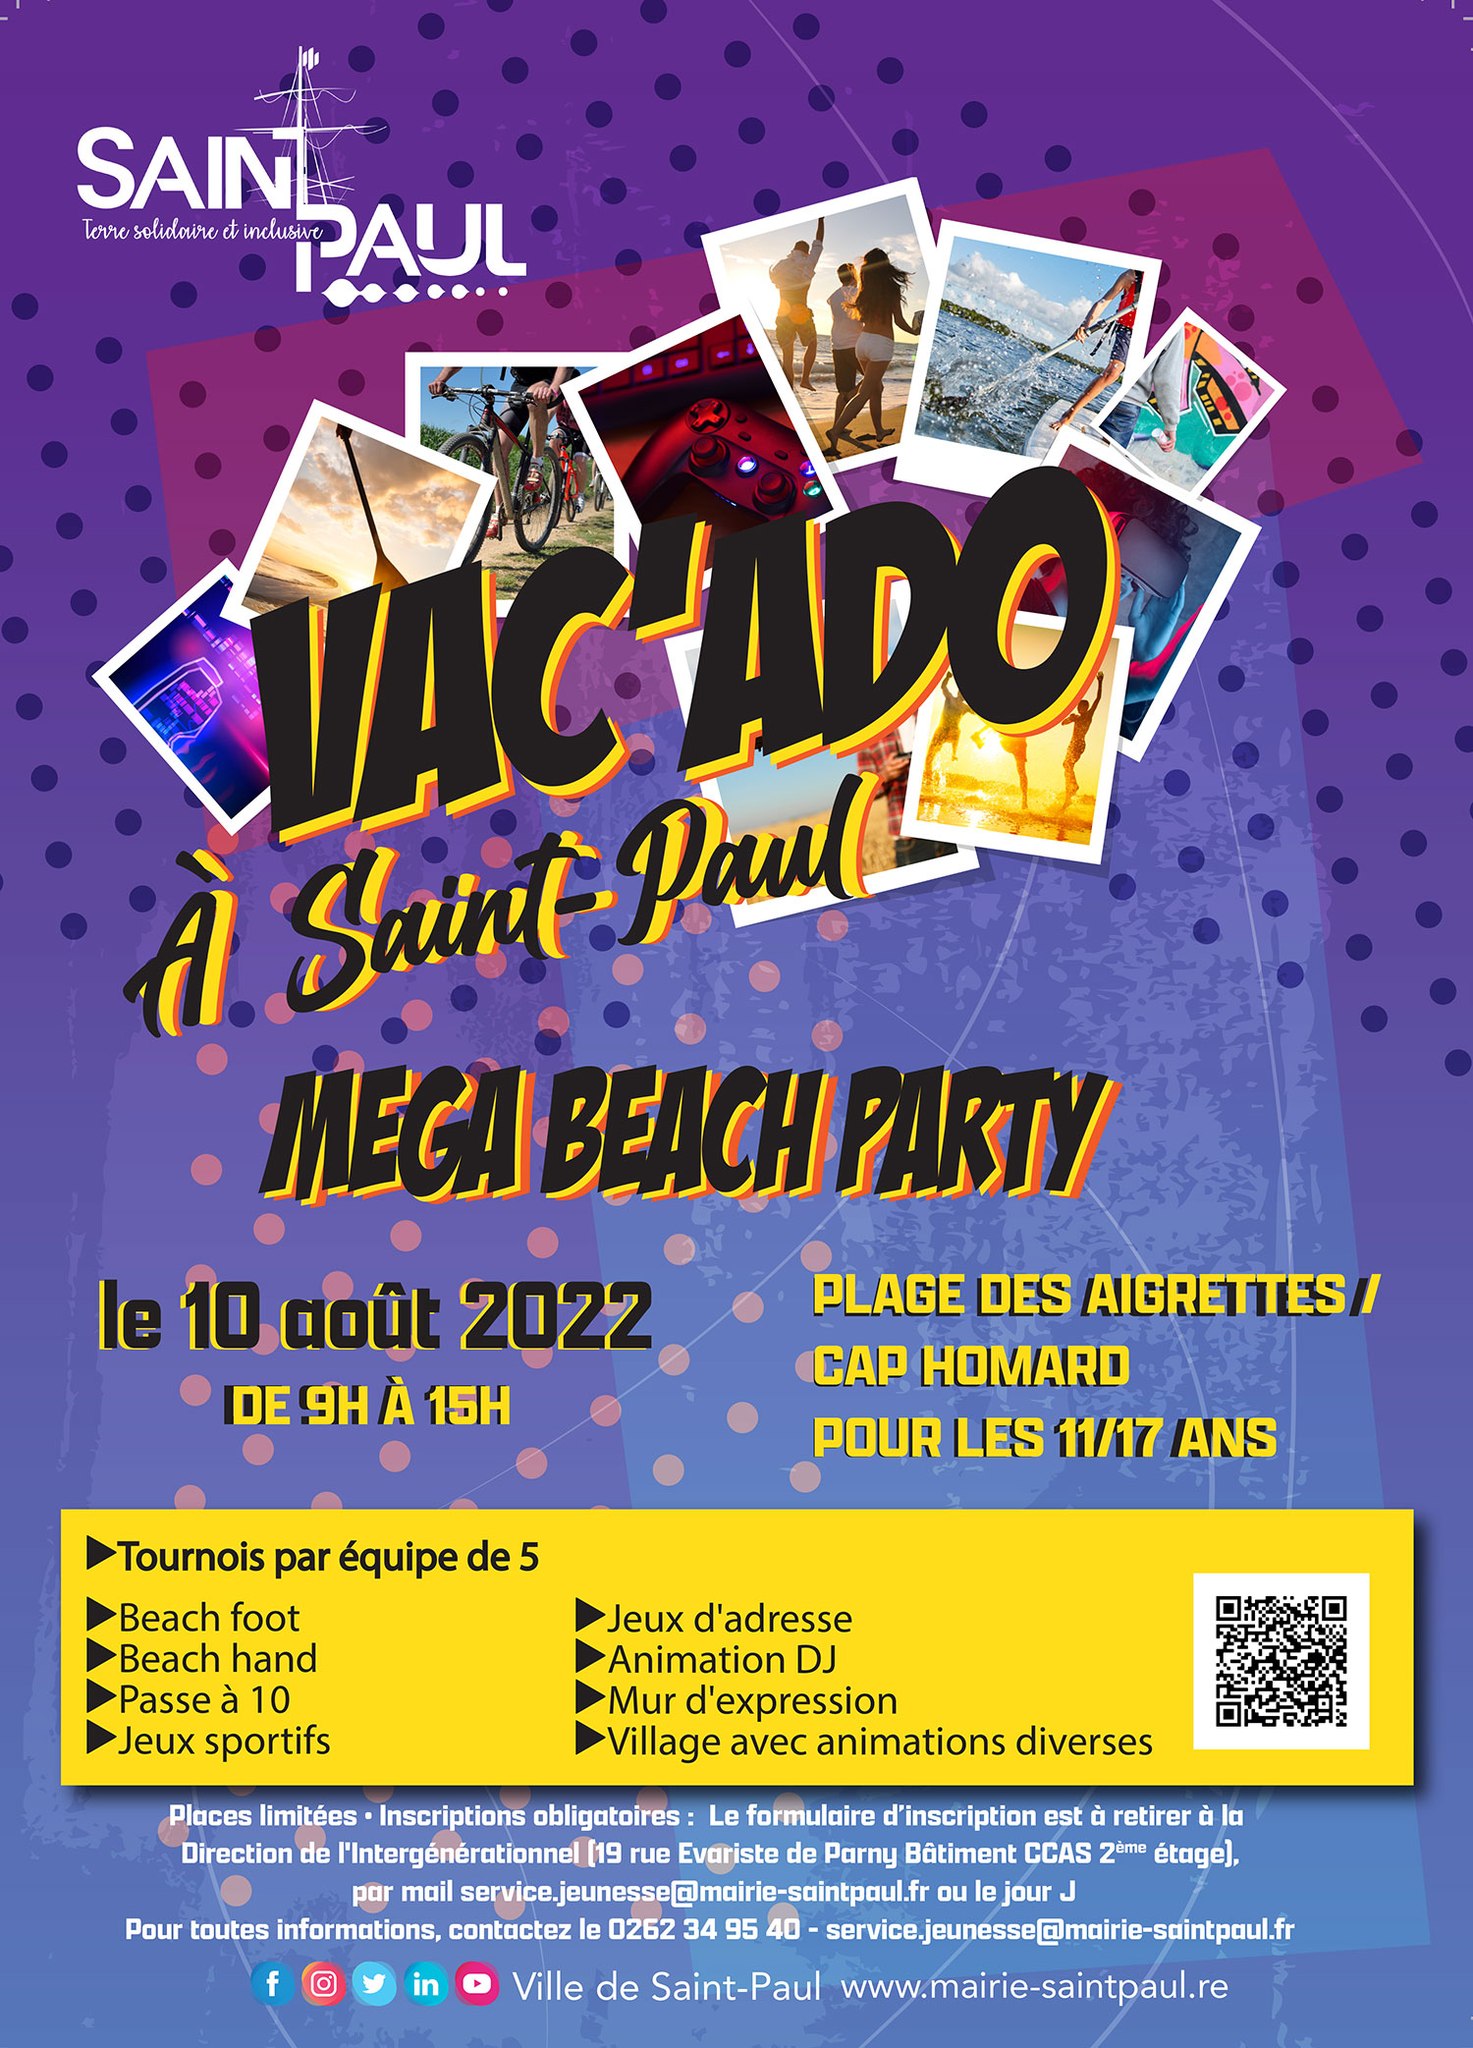 Saint-Paul organise une Méga Beach Party